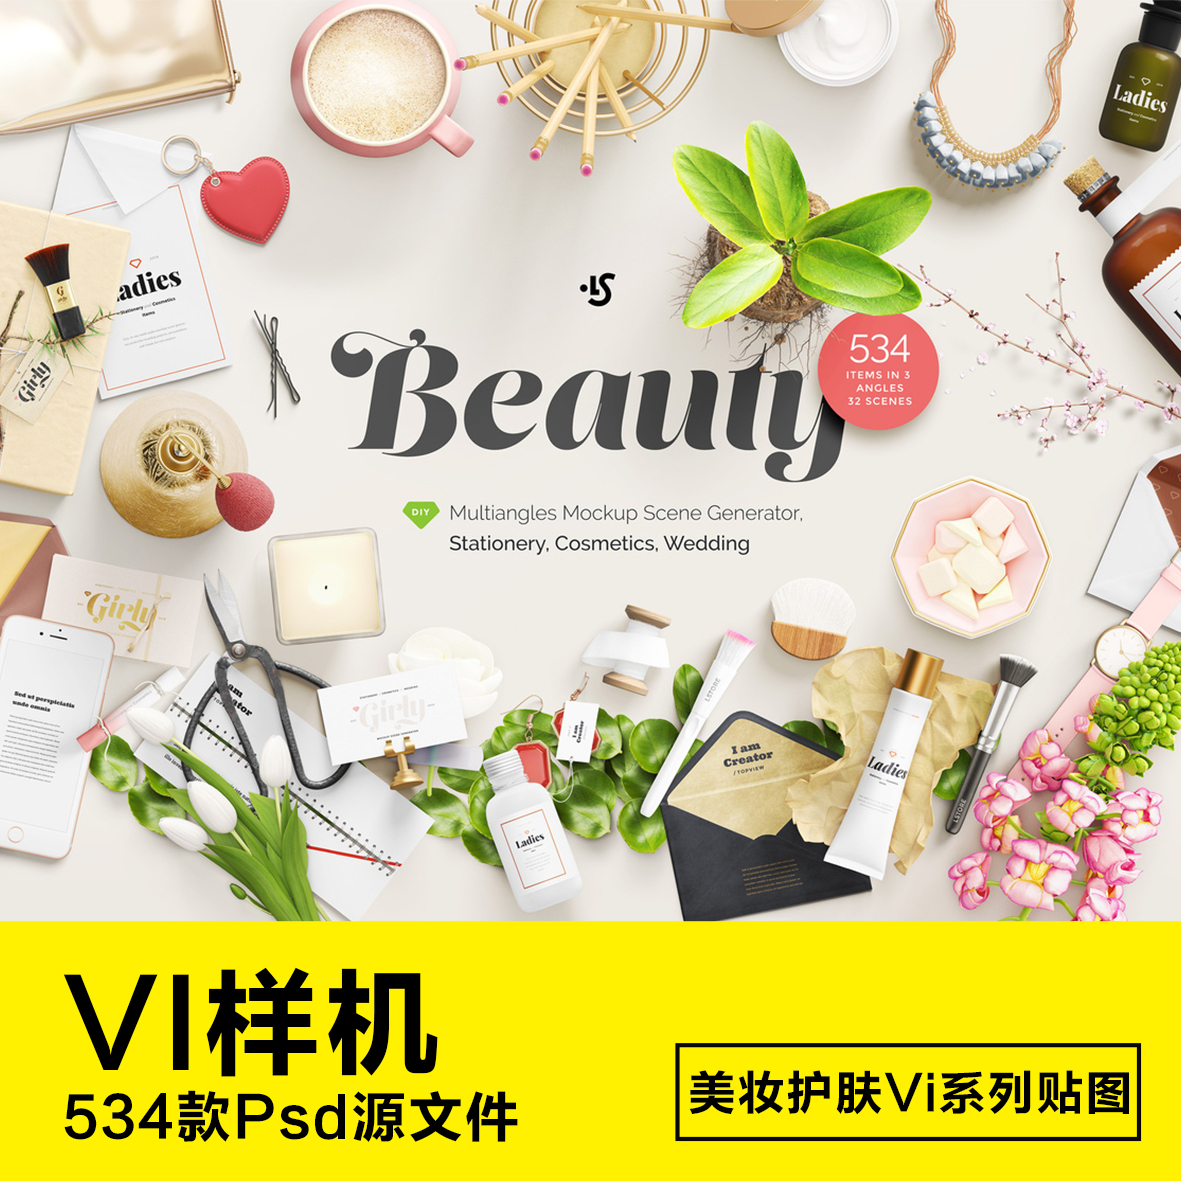 534款护肤化妆品包装名片vi设计展示贴图样机模板高清摄影psd